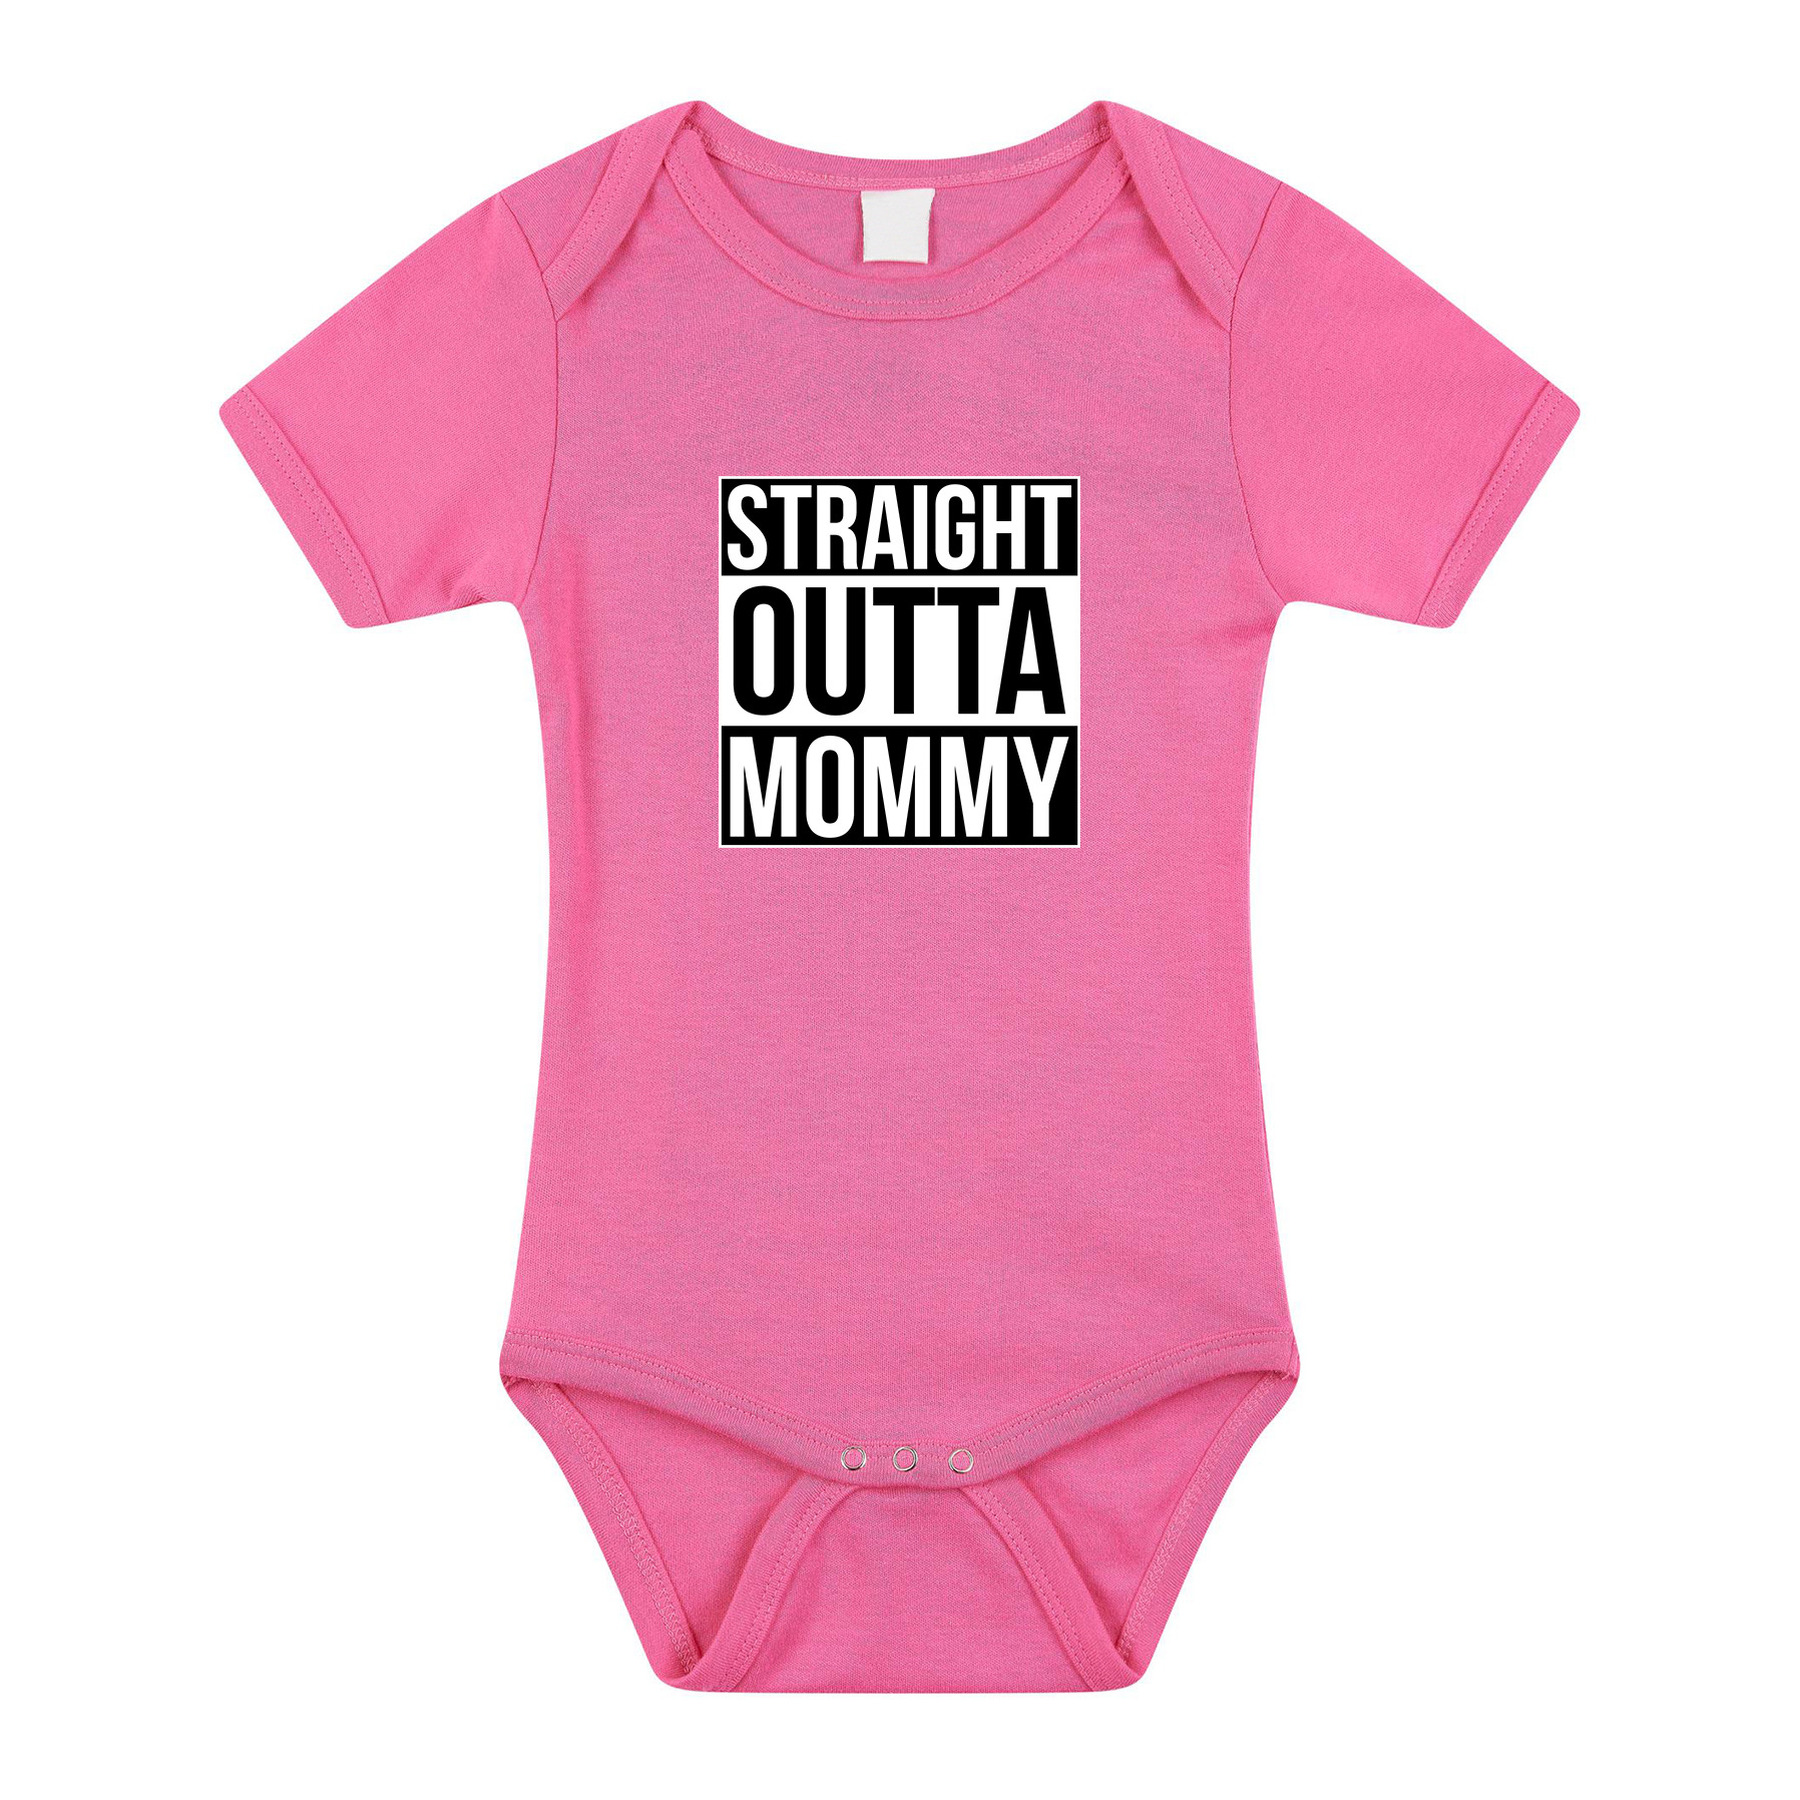 Straight outta mommy geboorte cadeau-kraamcadeau romper roze voor babys-meisjes